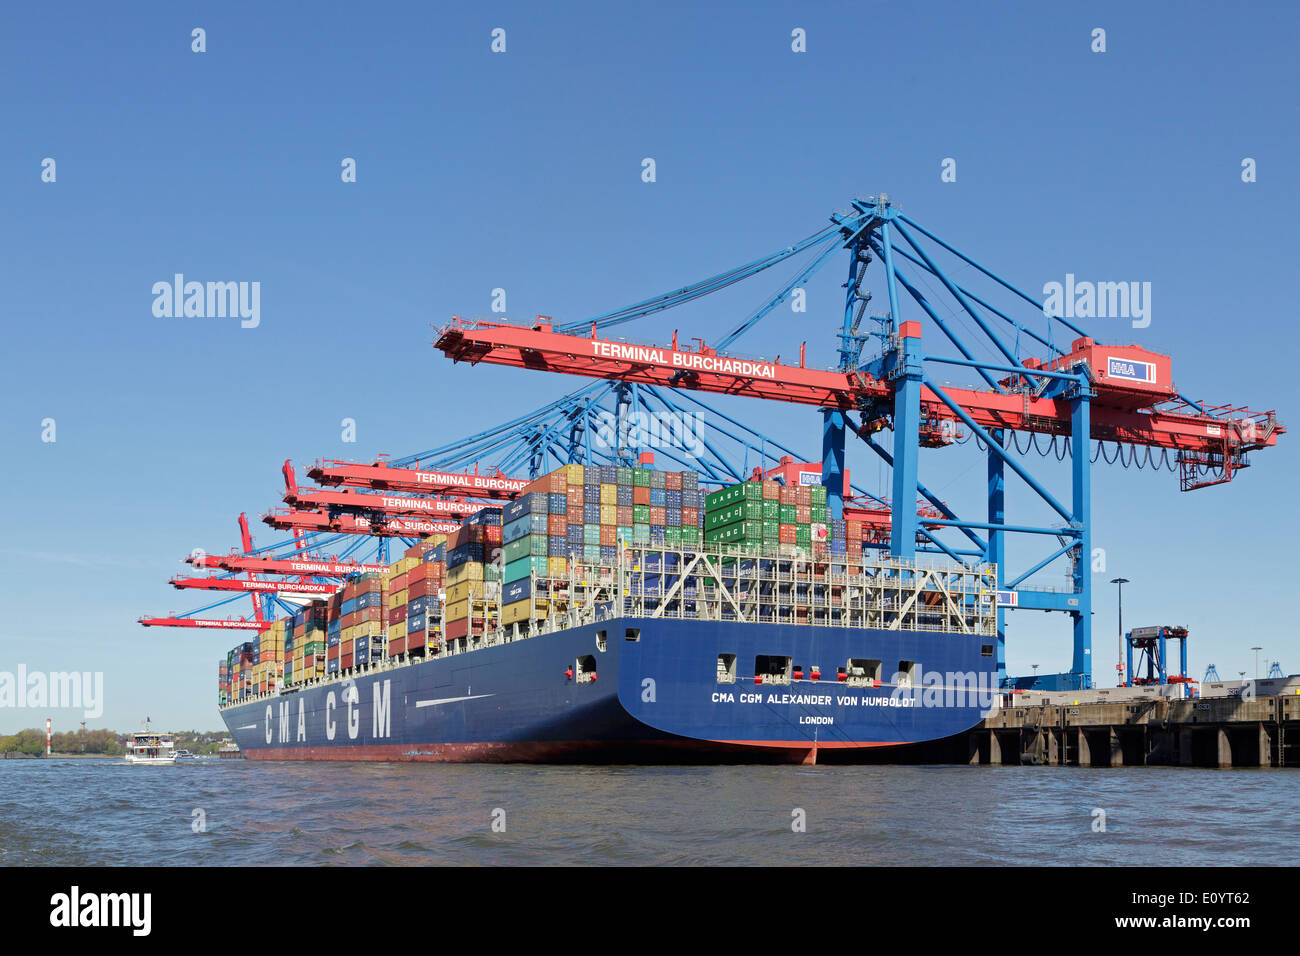 Containerschiff nahm von Humboldt´ am Container Terminal Burchardkai, Hafen, Hamburg, Deutschland Stockfoto